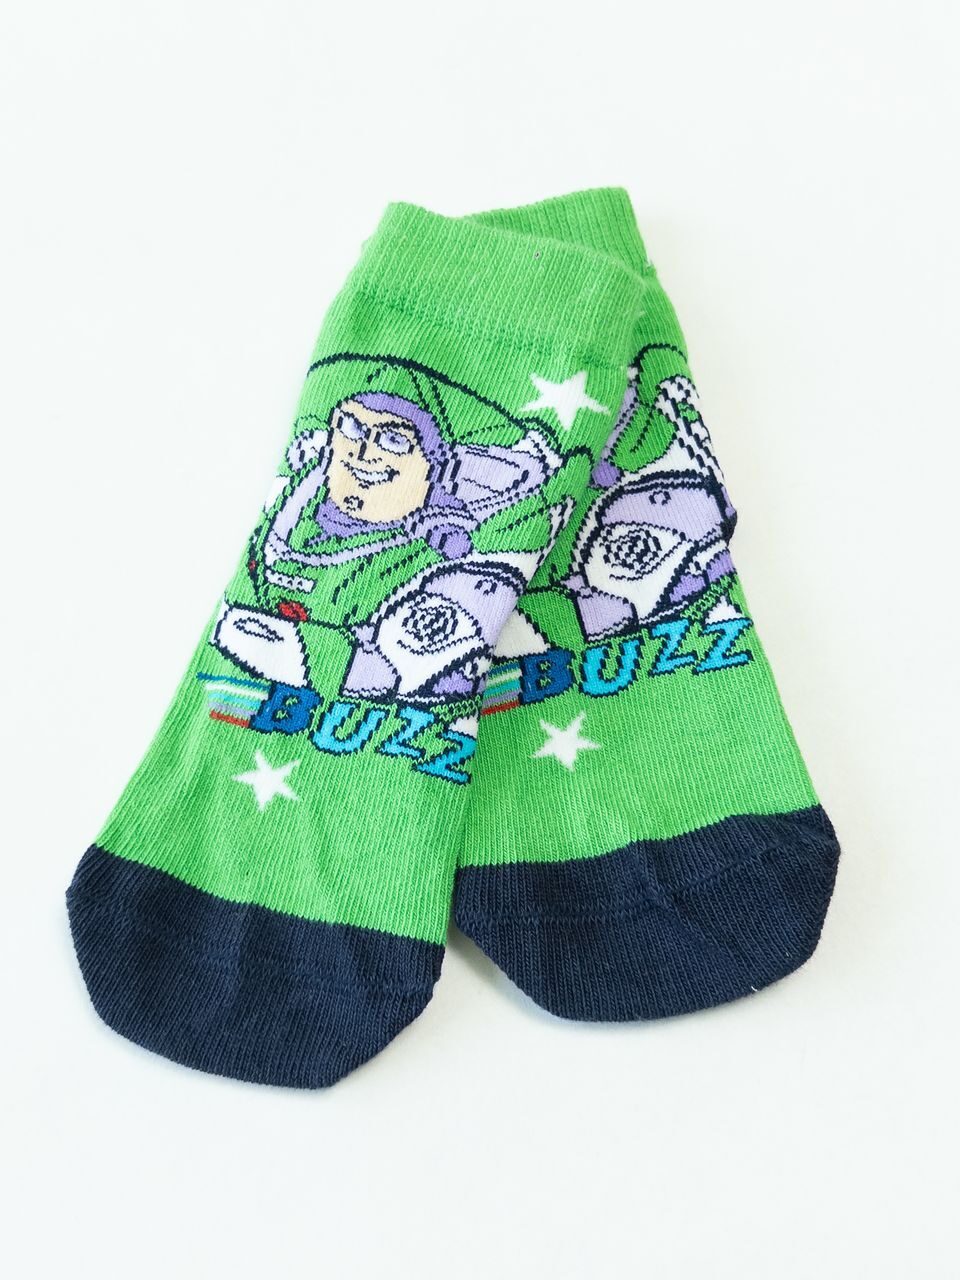 Носки хлопковые для мальчика цвет зеленый с принтом Buzz стопа 10-12 см возраст 6-12 месяцев George